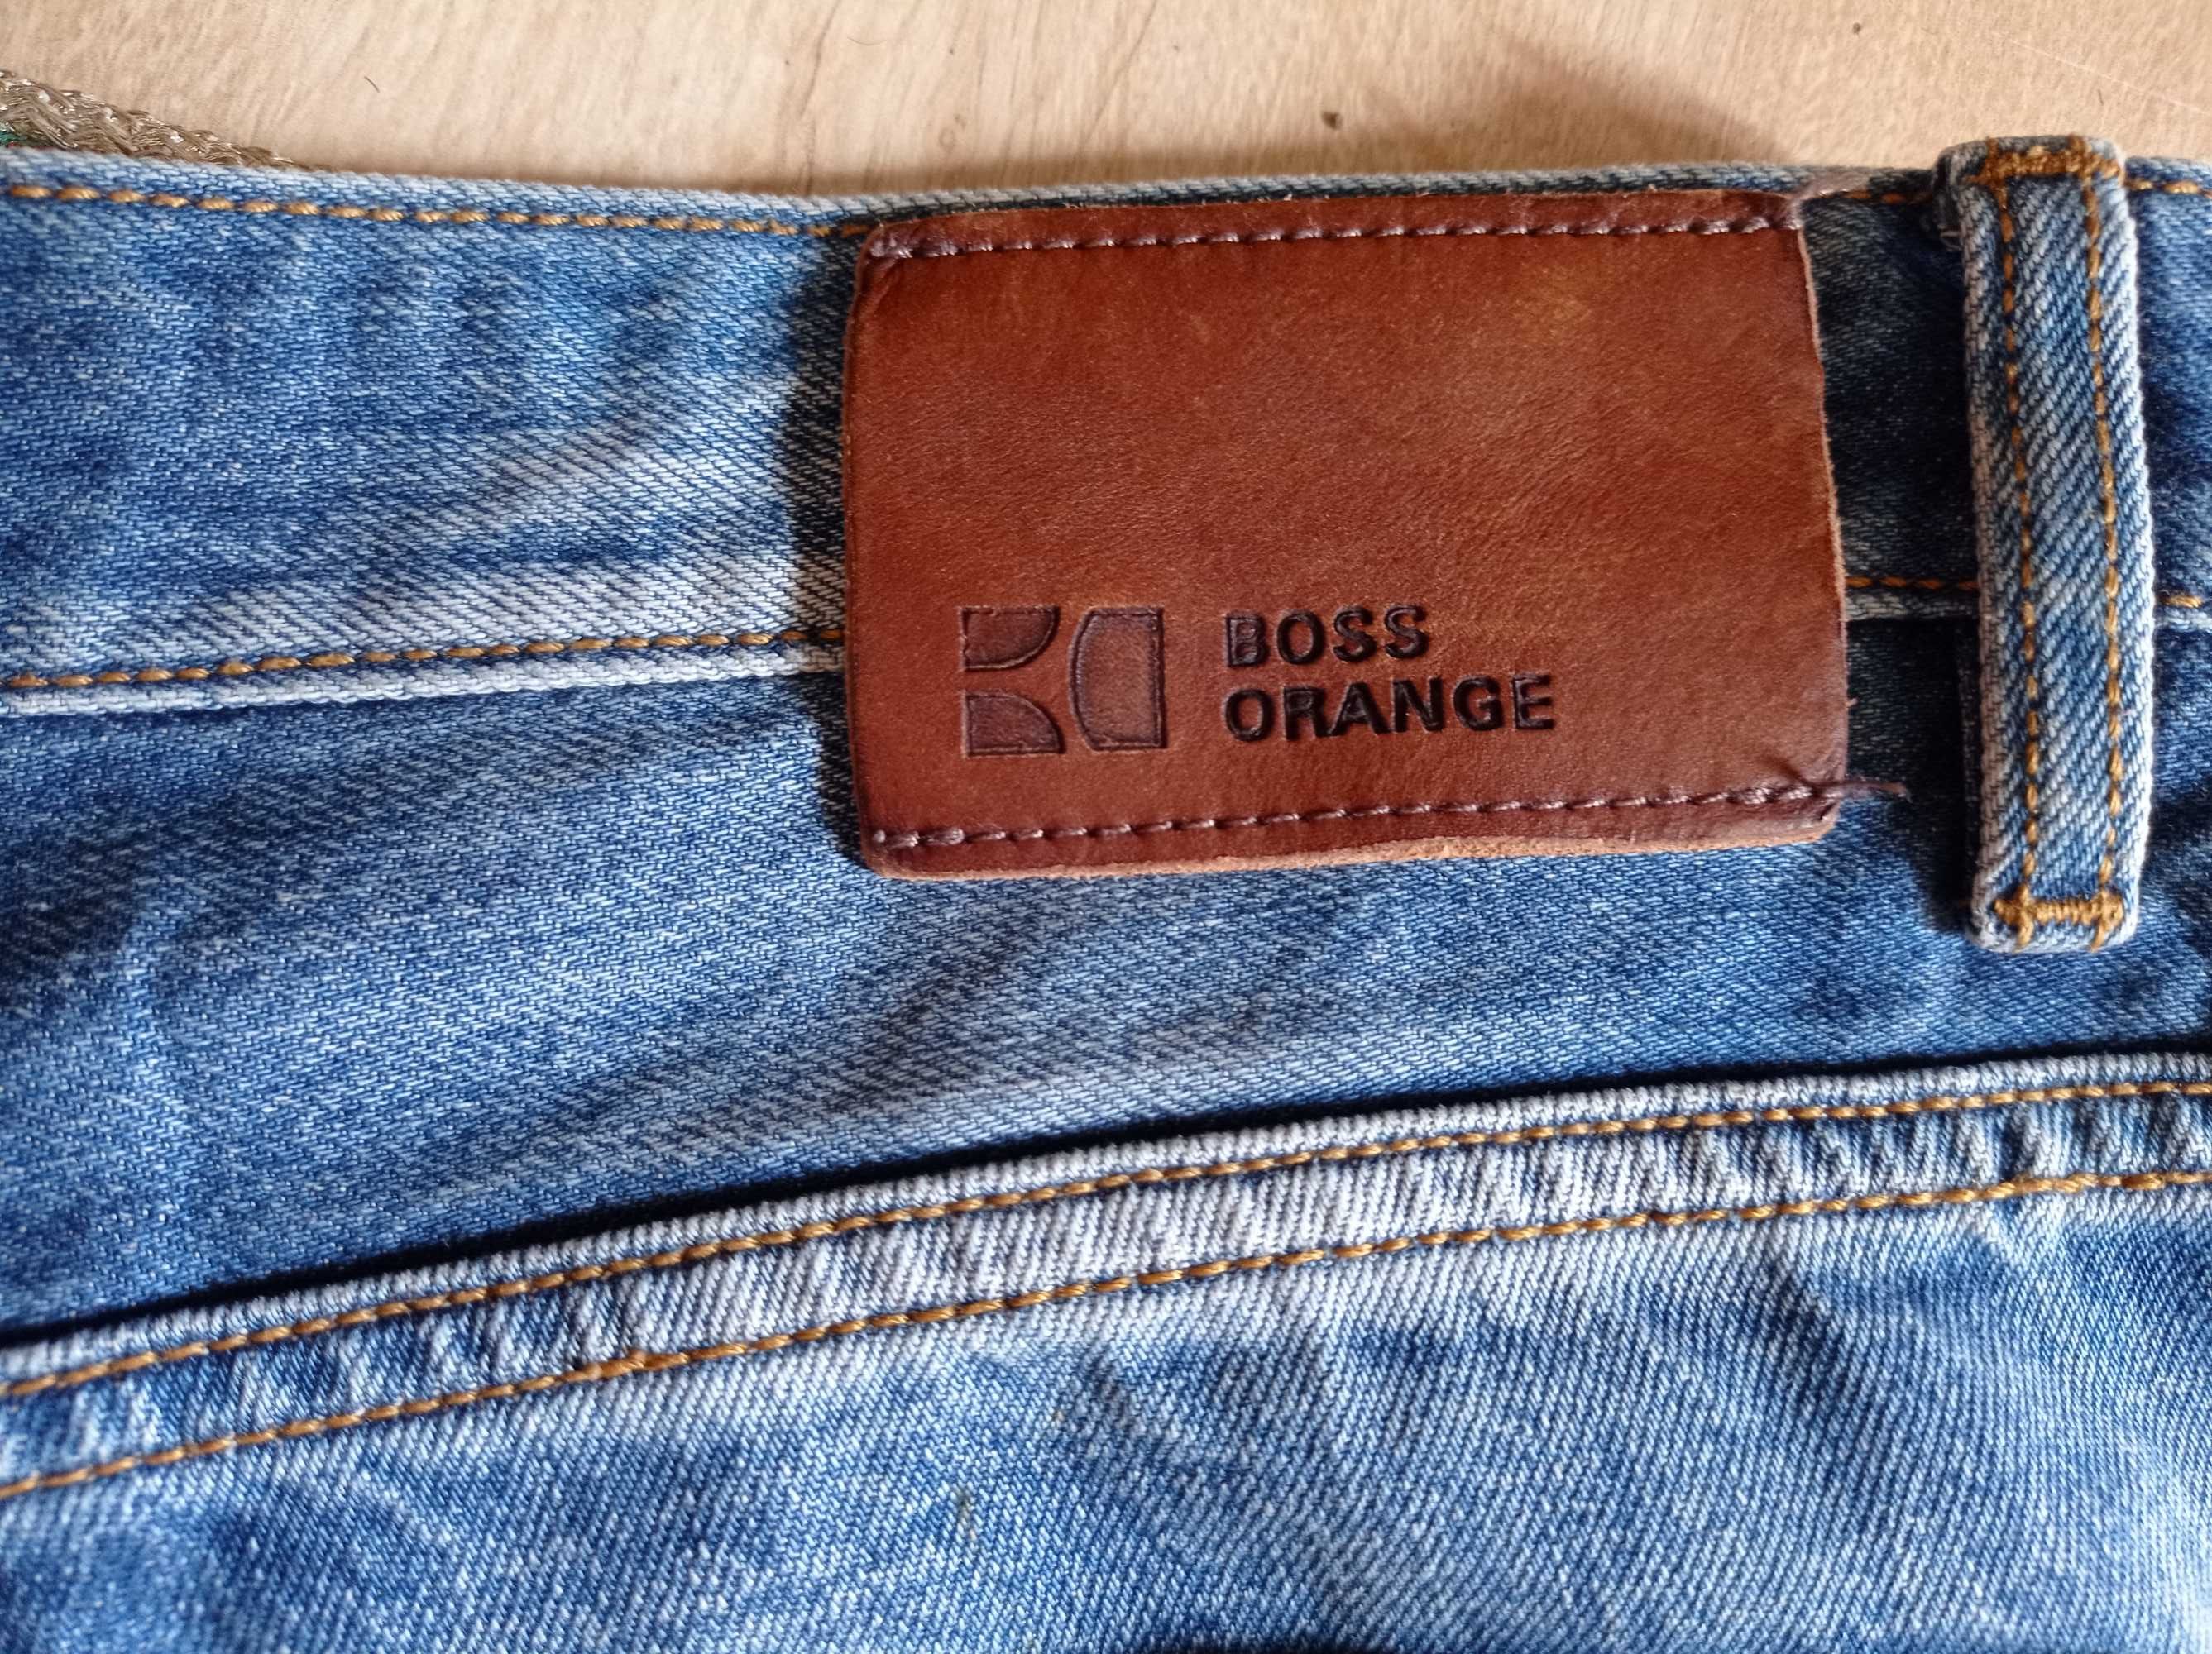 HUGO BOSS, *рваный - Ripped* джинсы мужские, размер 34/32, новые